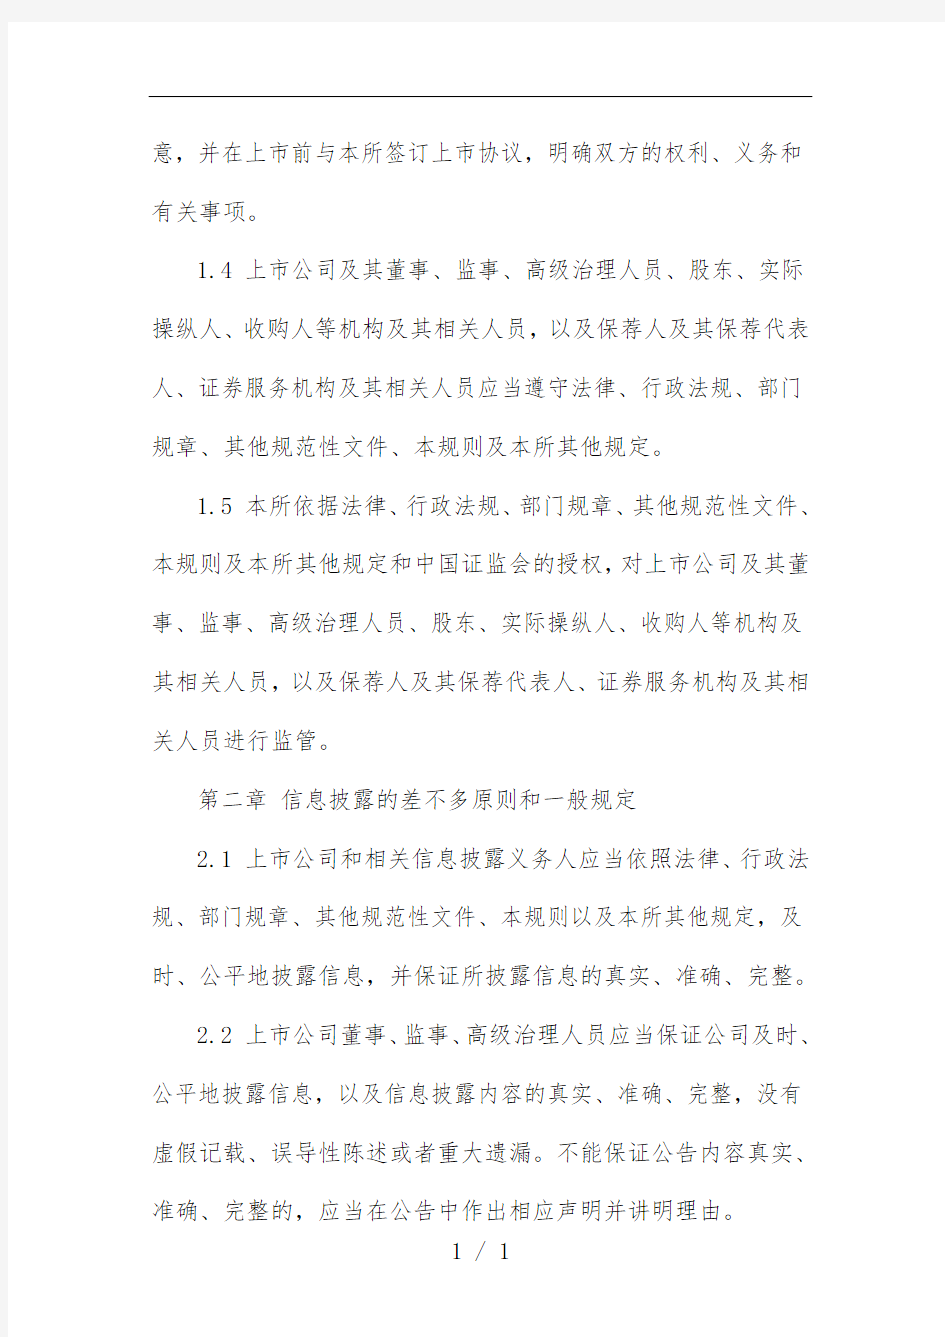 上海证券交易所股票上市细则文件